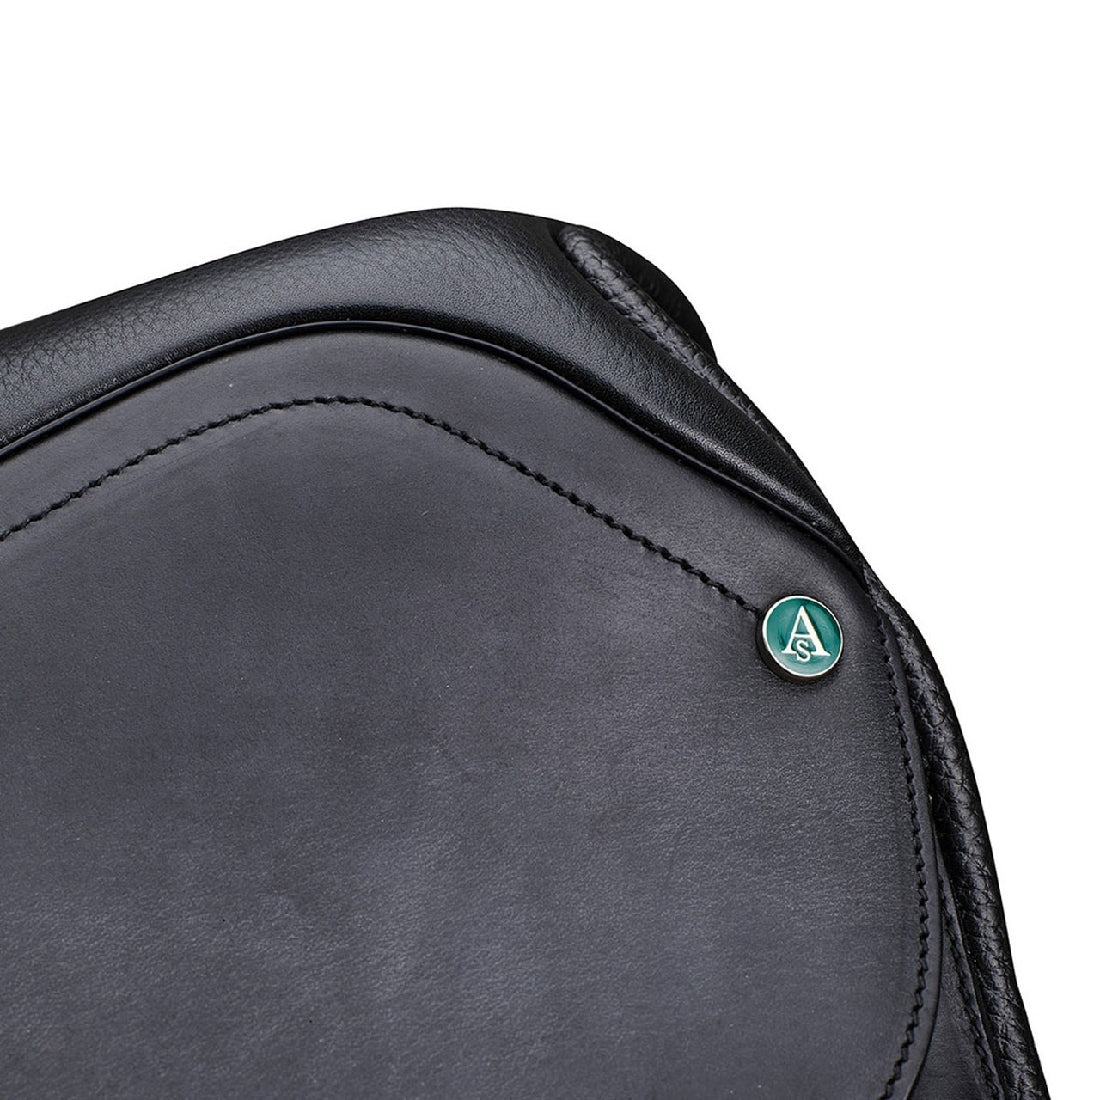 Close-up of black Arena Saddles logo on leather saddle surface.